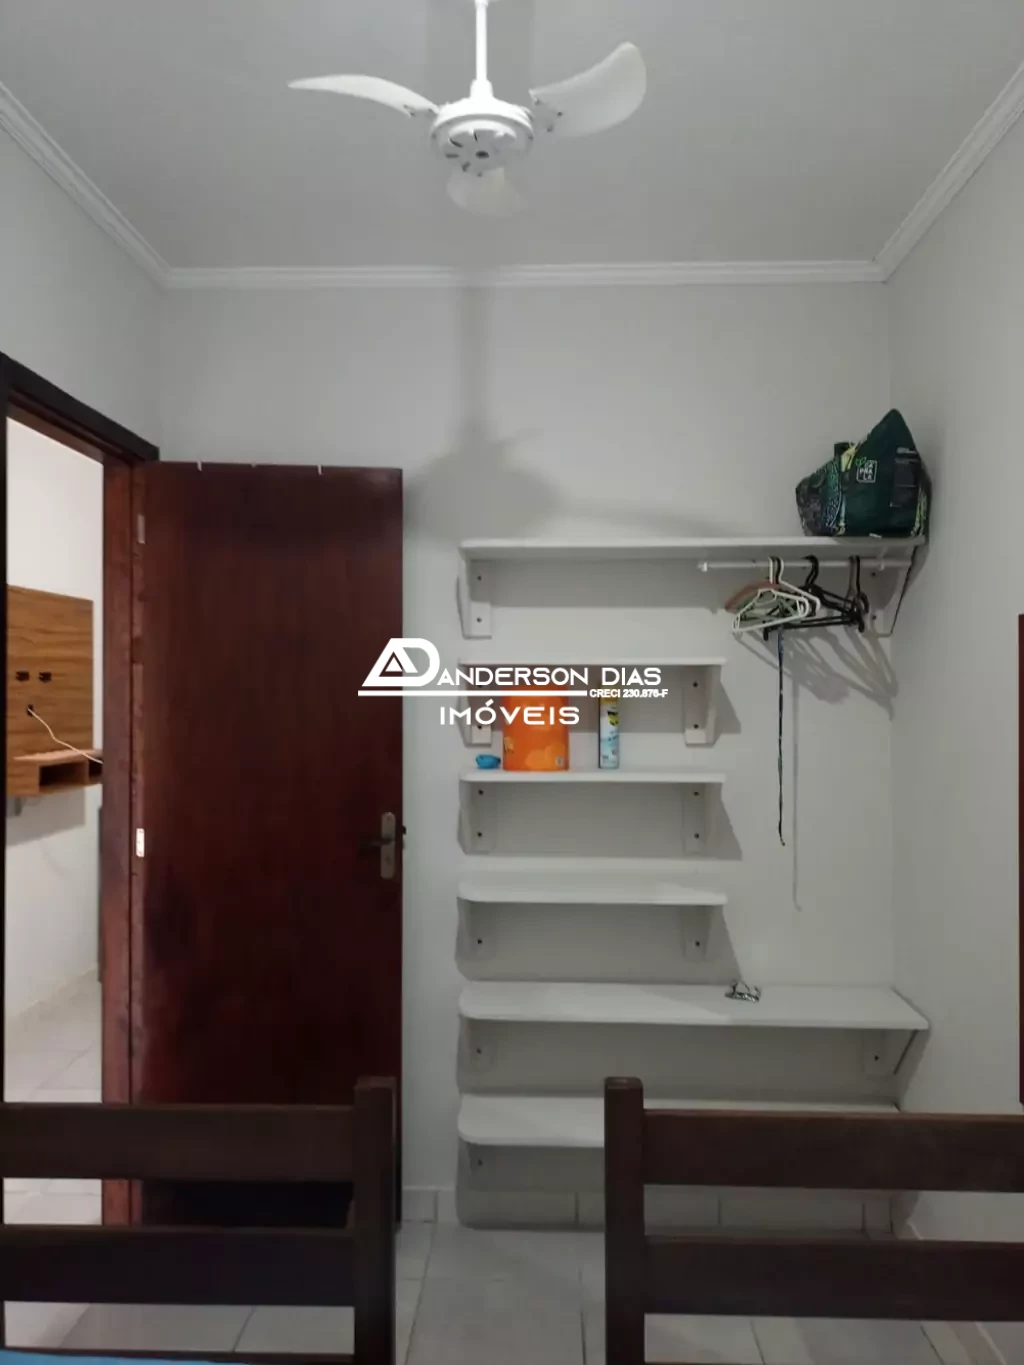 Apartamento mobiliado com 1 dormitório para aluguel definitivo por $ 1.300,00 - Prainha- Caraguatatuba/SP